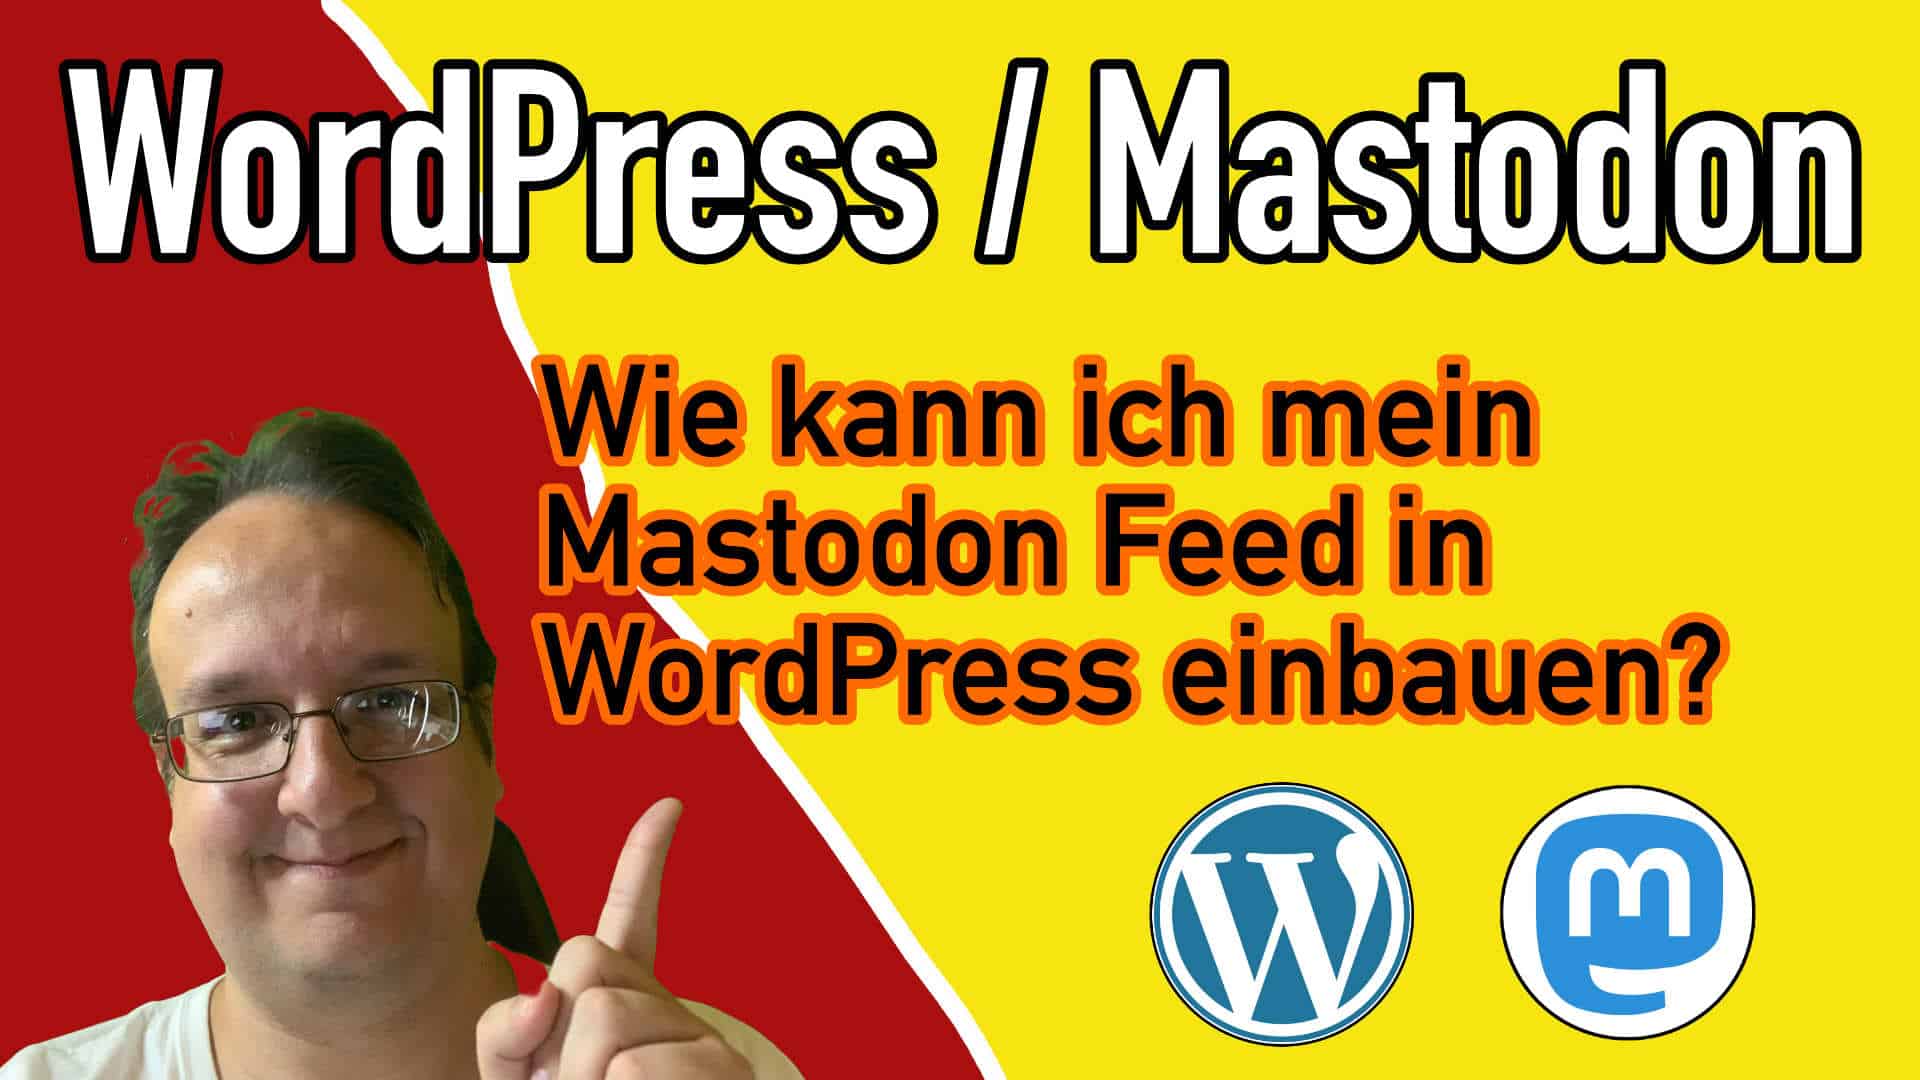 Wie kann ich meinen Mastodon Feed in WordPress einbauen und anzeigen lassen?